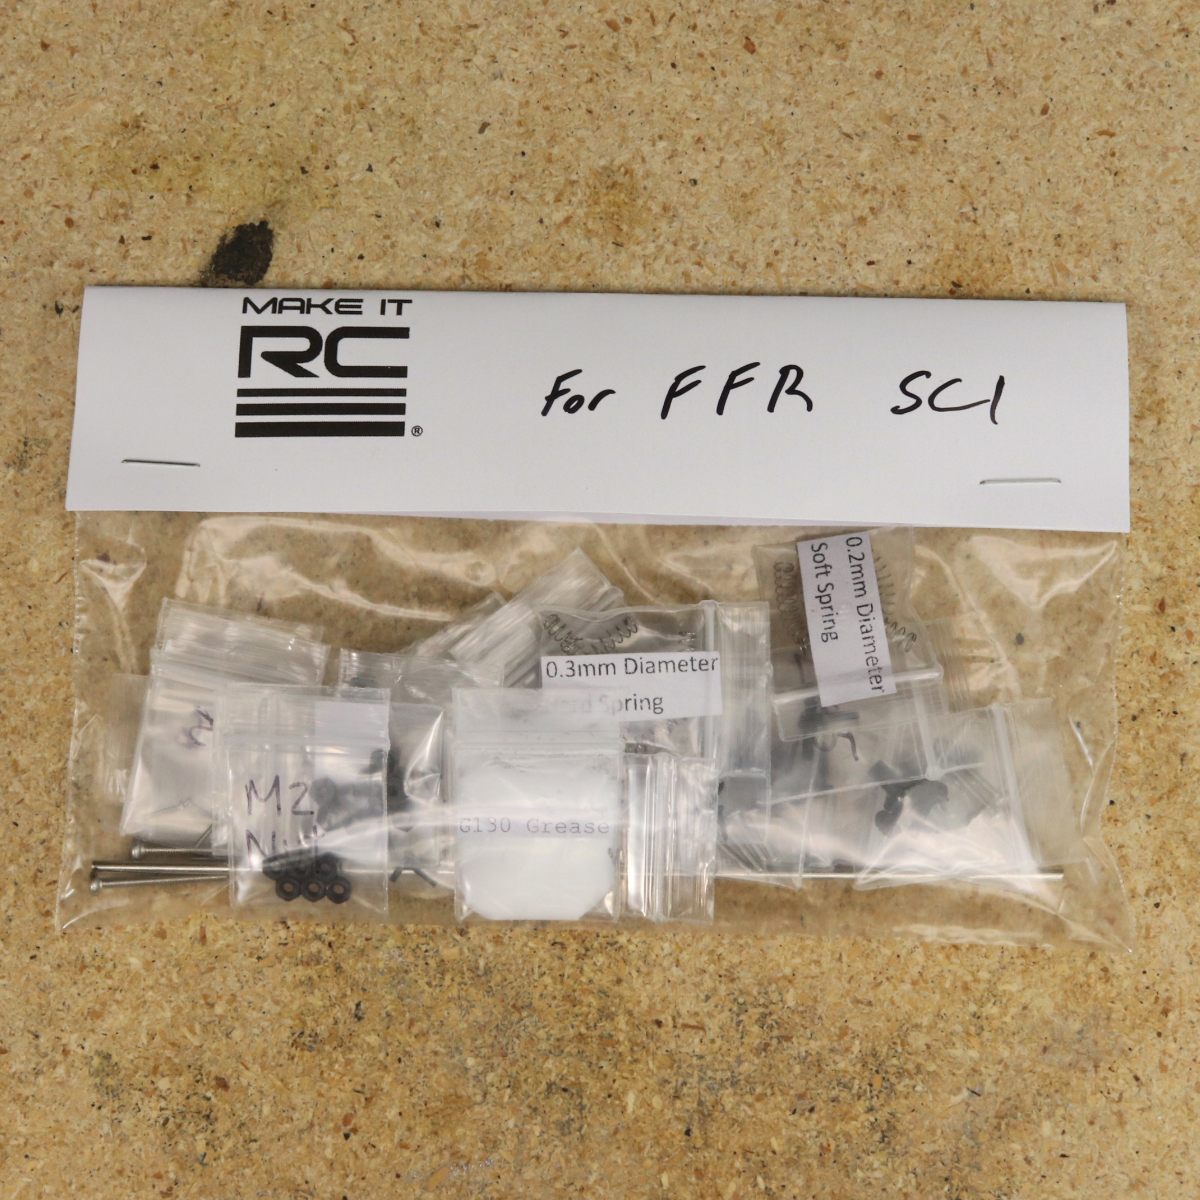 Hardware Kit for FFR SC1